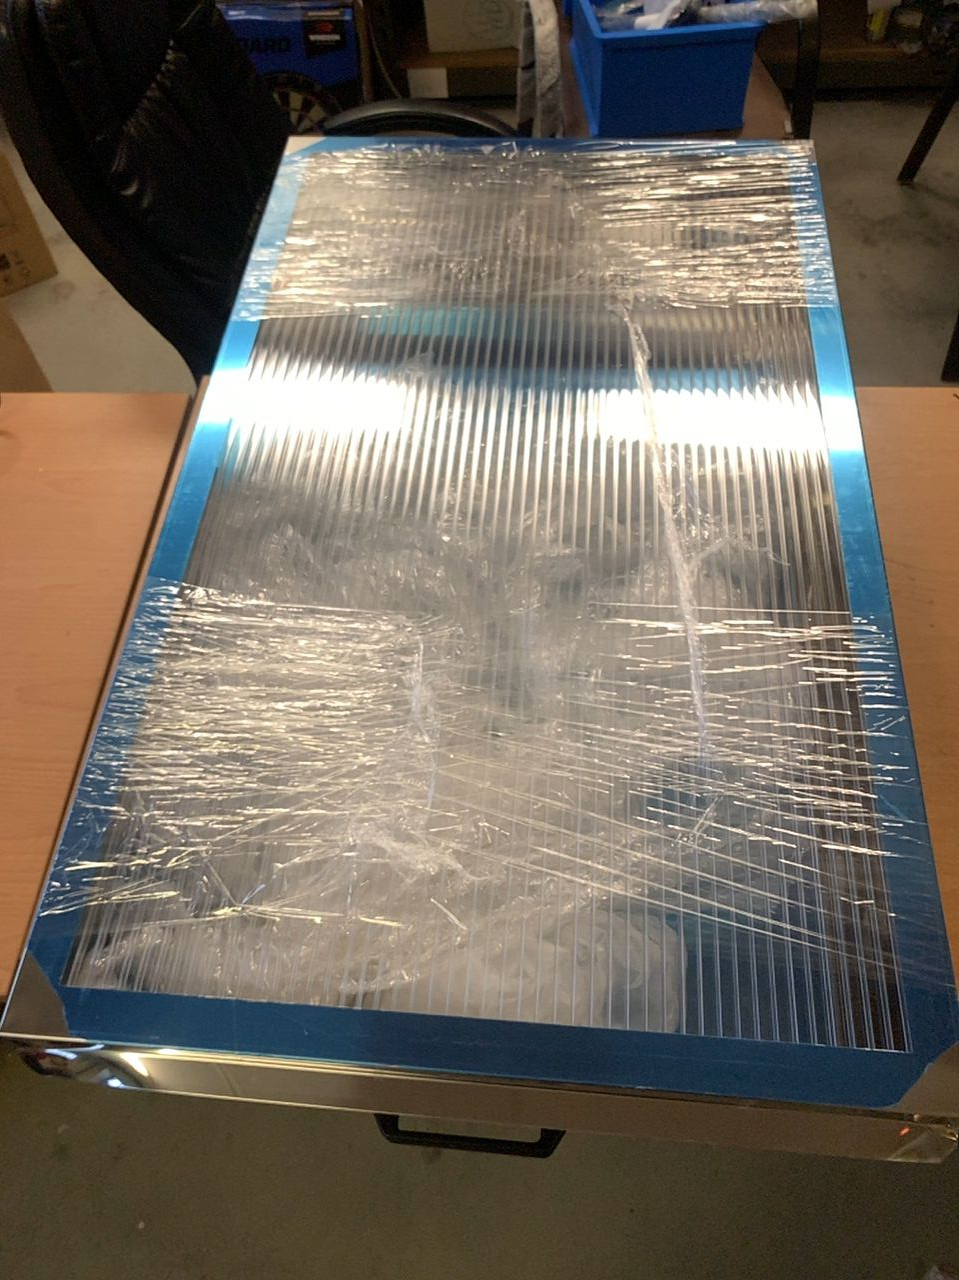 Tavidlo vosku solární nerezové velké - zařízení určené k vytavování vosku ze včelích rámků. Lyson W3249